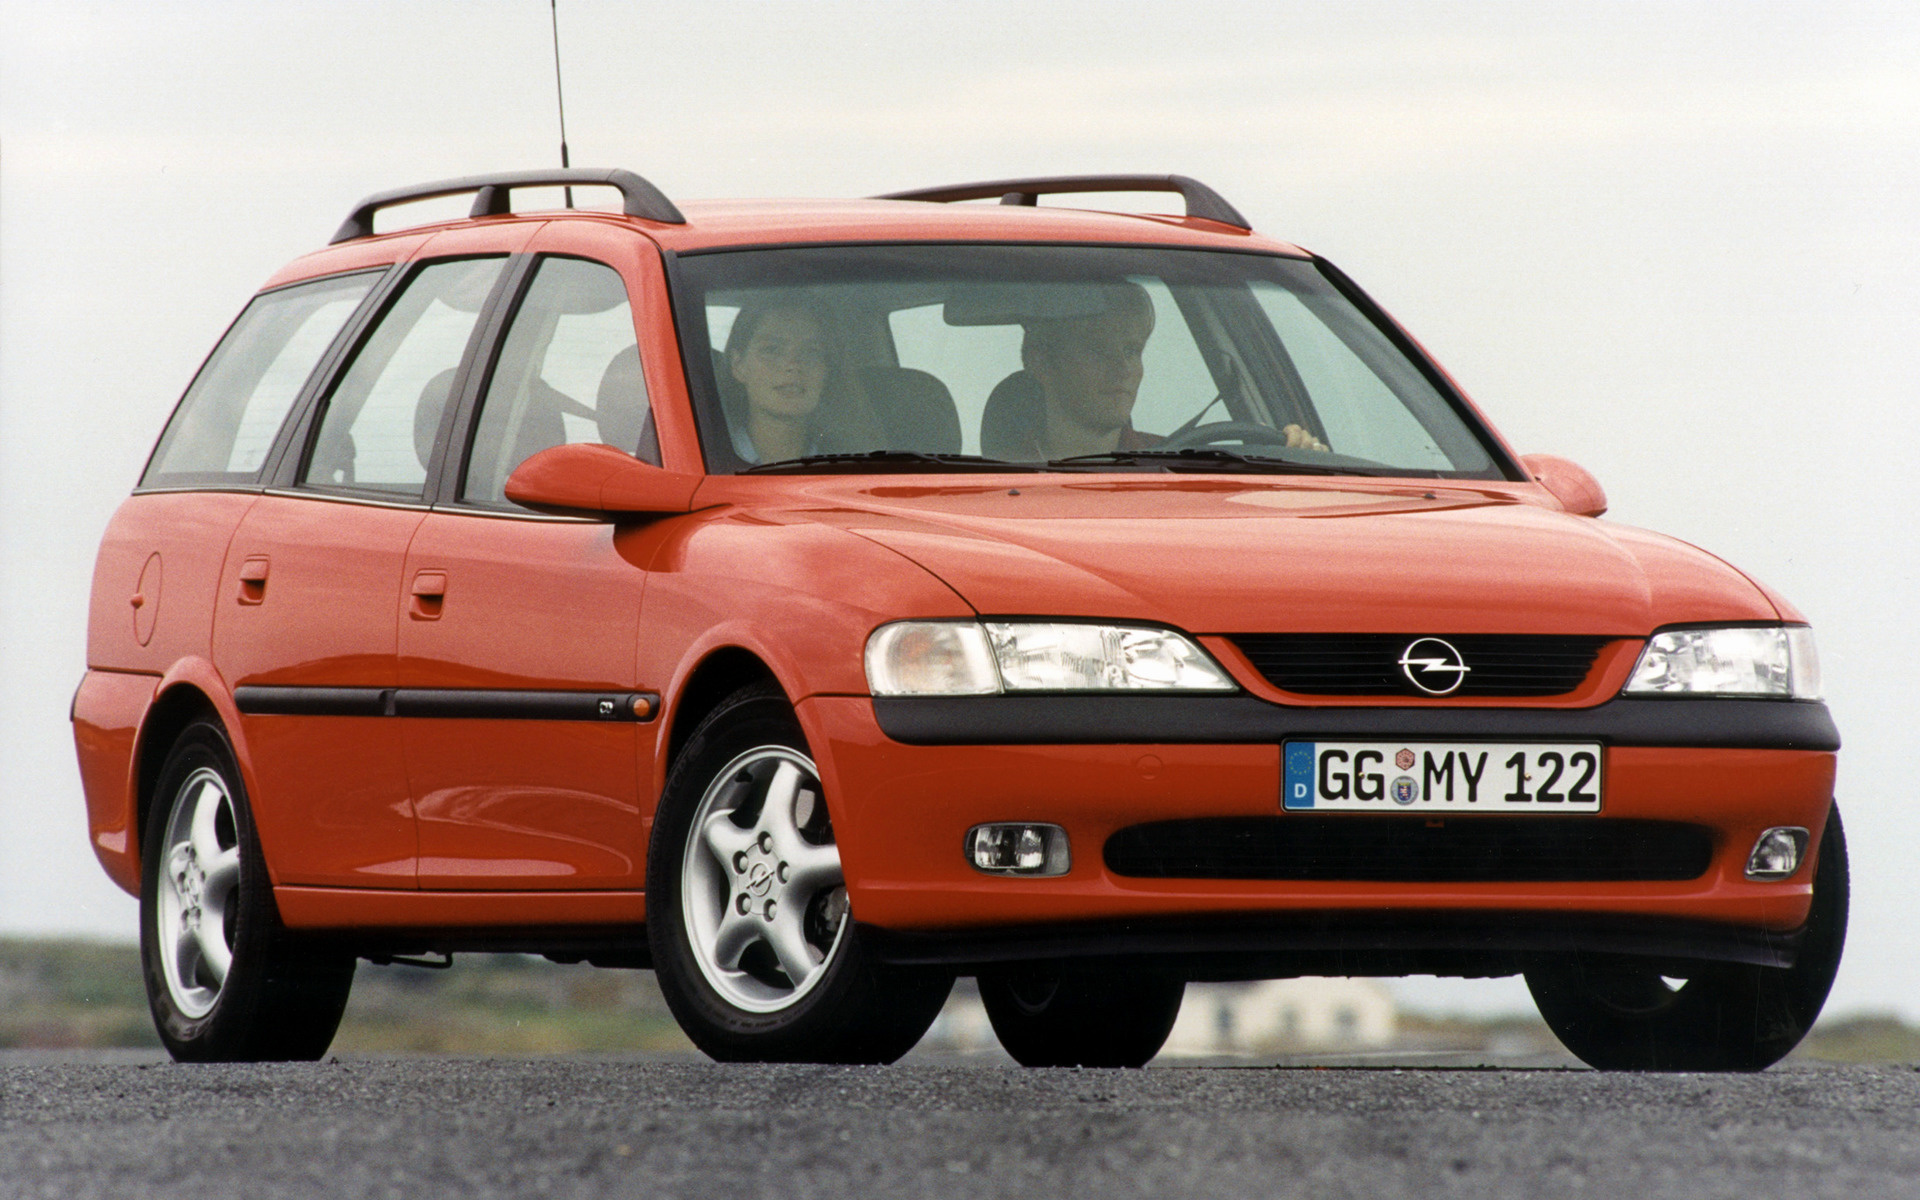 Вектра караван. Opel Vectra Caravan. Opel Vectra Caravan 1998. Опель Вектра Караван 1999. Опель Вектра Караван 1998.